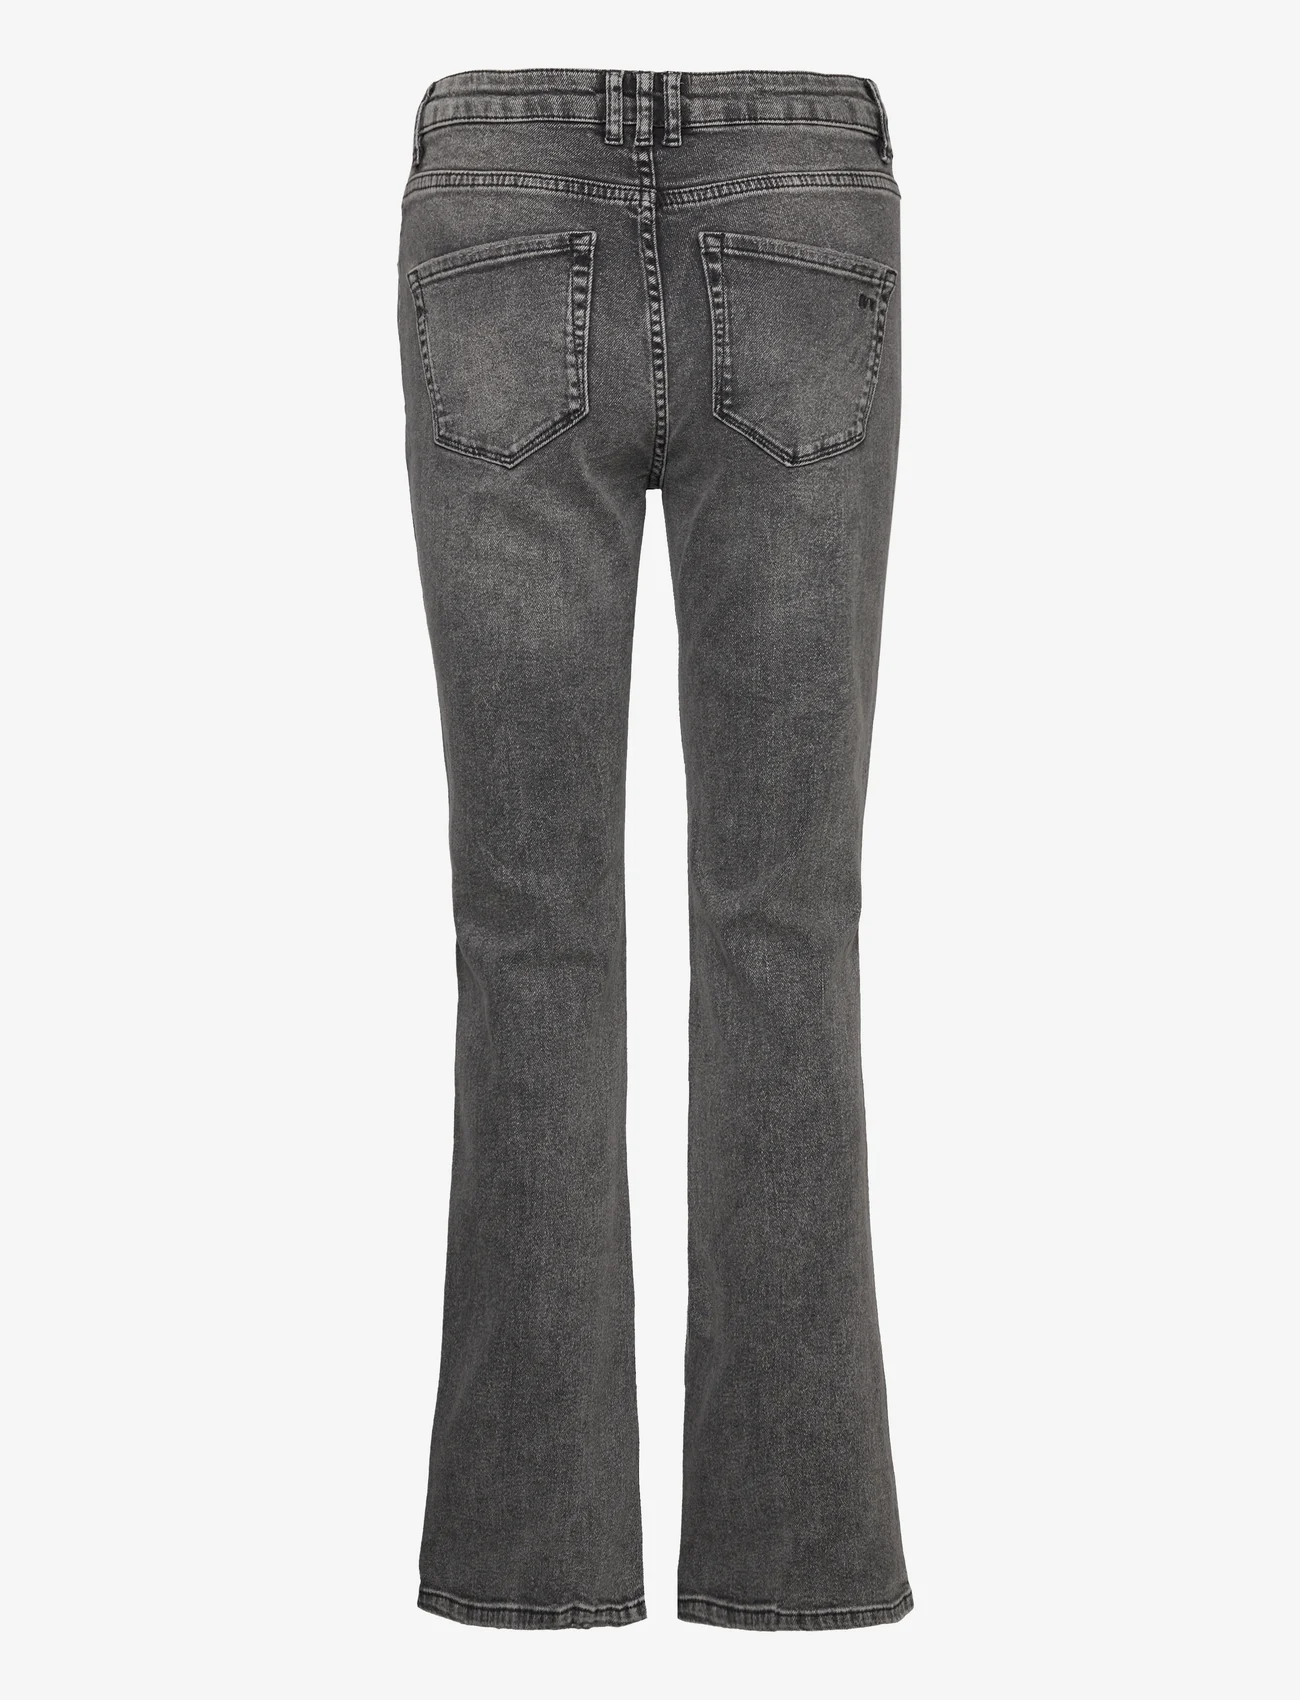 IVY Copenhagen - IVY-Tara Jeans Wash Rockstar Grey - nuo kelių platėjantys džinsai - grey - 1